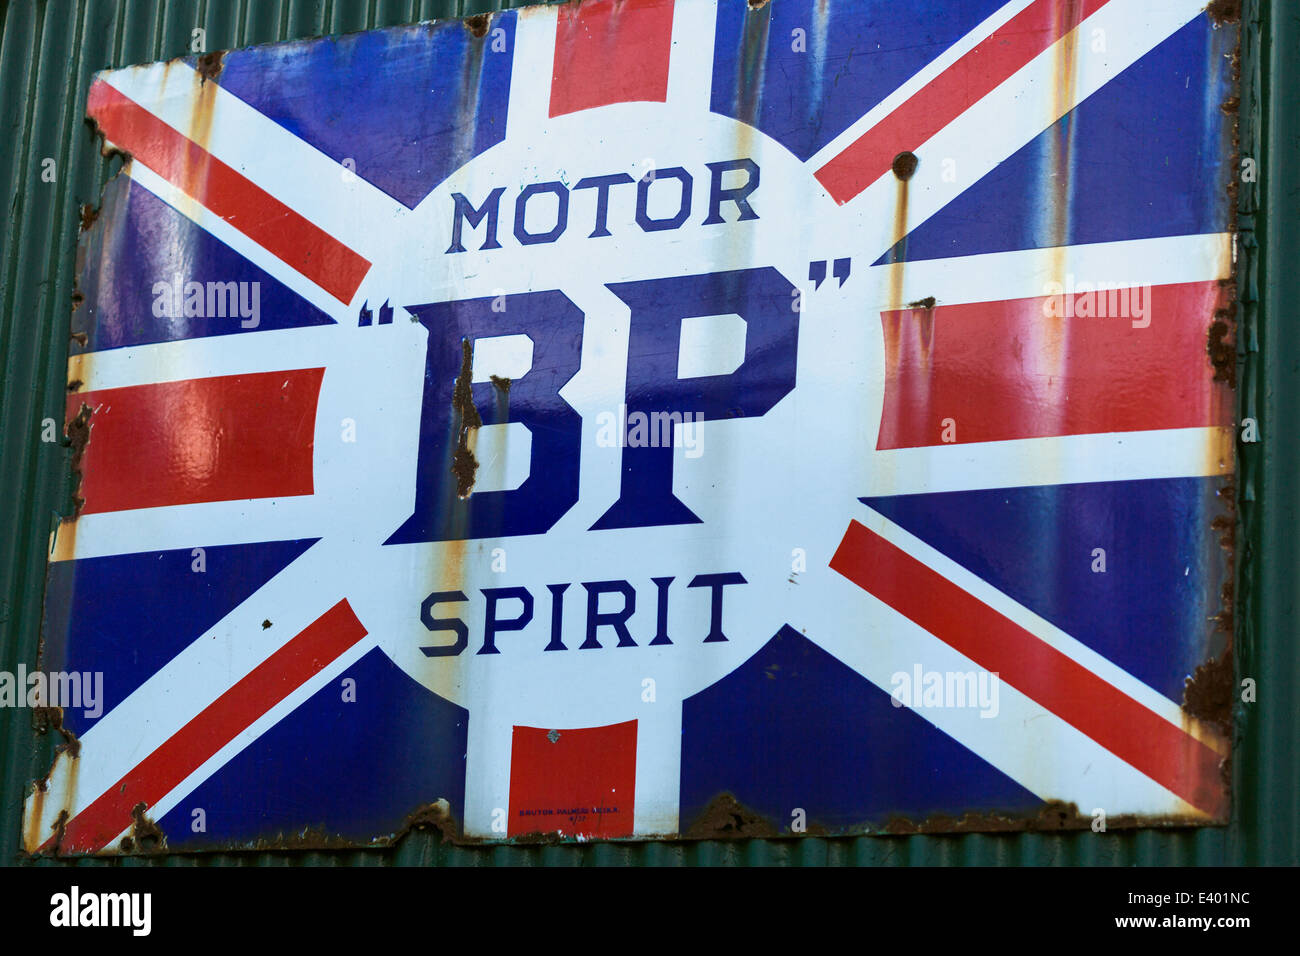 Vieux carburant BP signe. Années 1950. Wroxham Norfolk England UK Banque D'Images